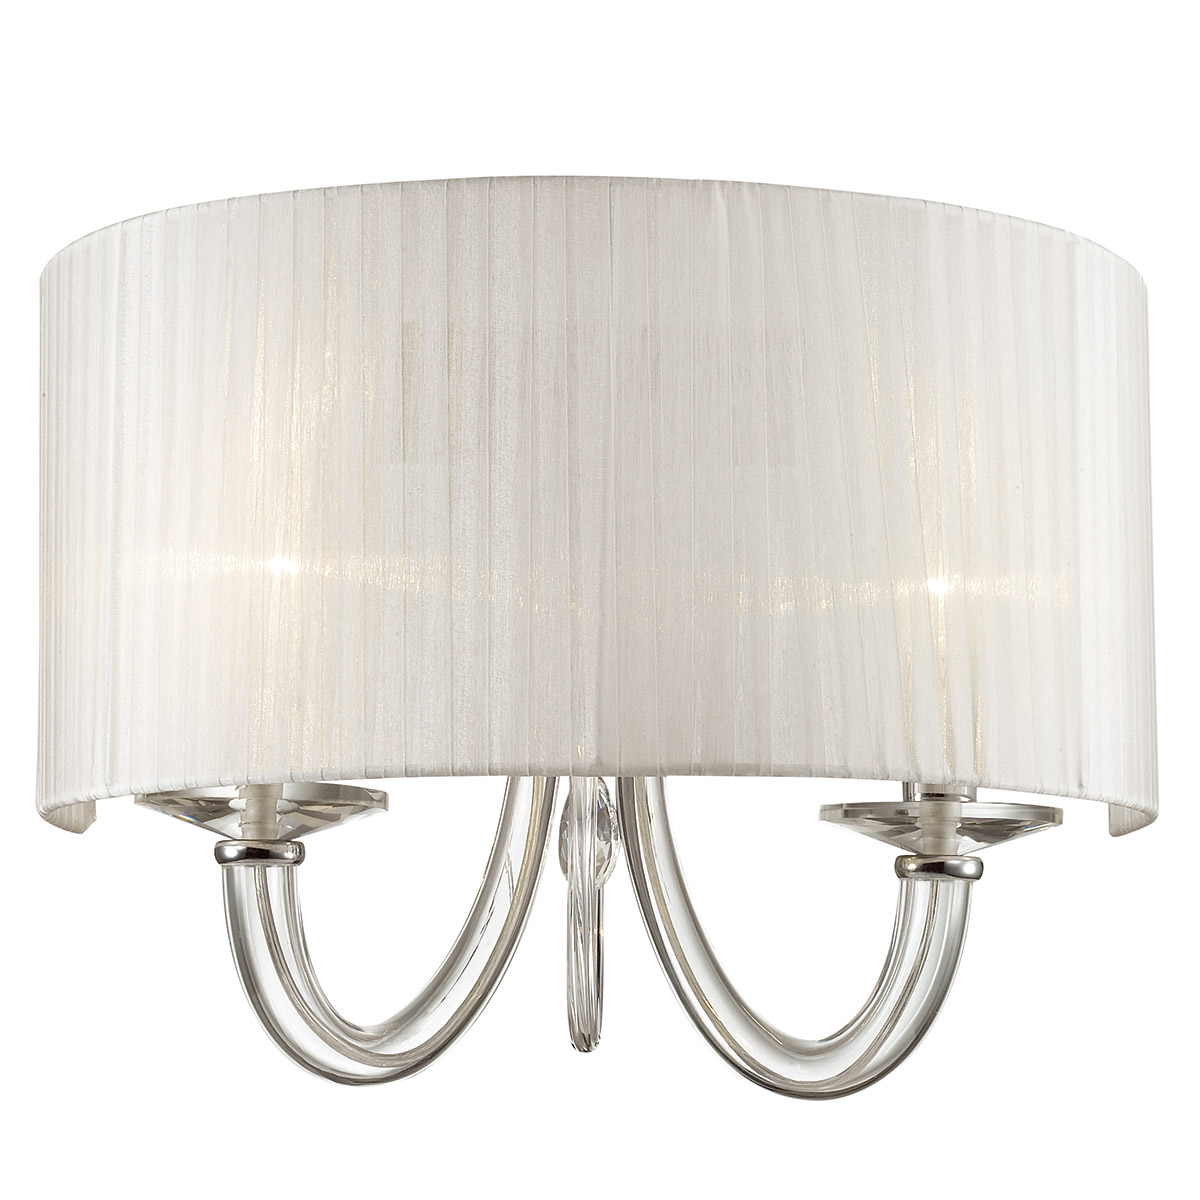 Kinkiet Italux Mulber MA05101W-002 oprawa lampa ścienna 2x40W E14 chrom, biały